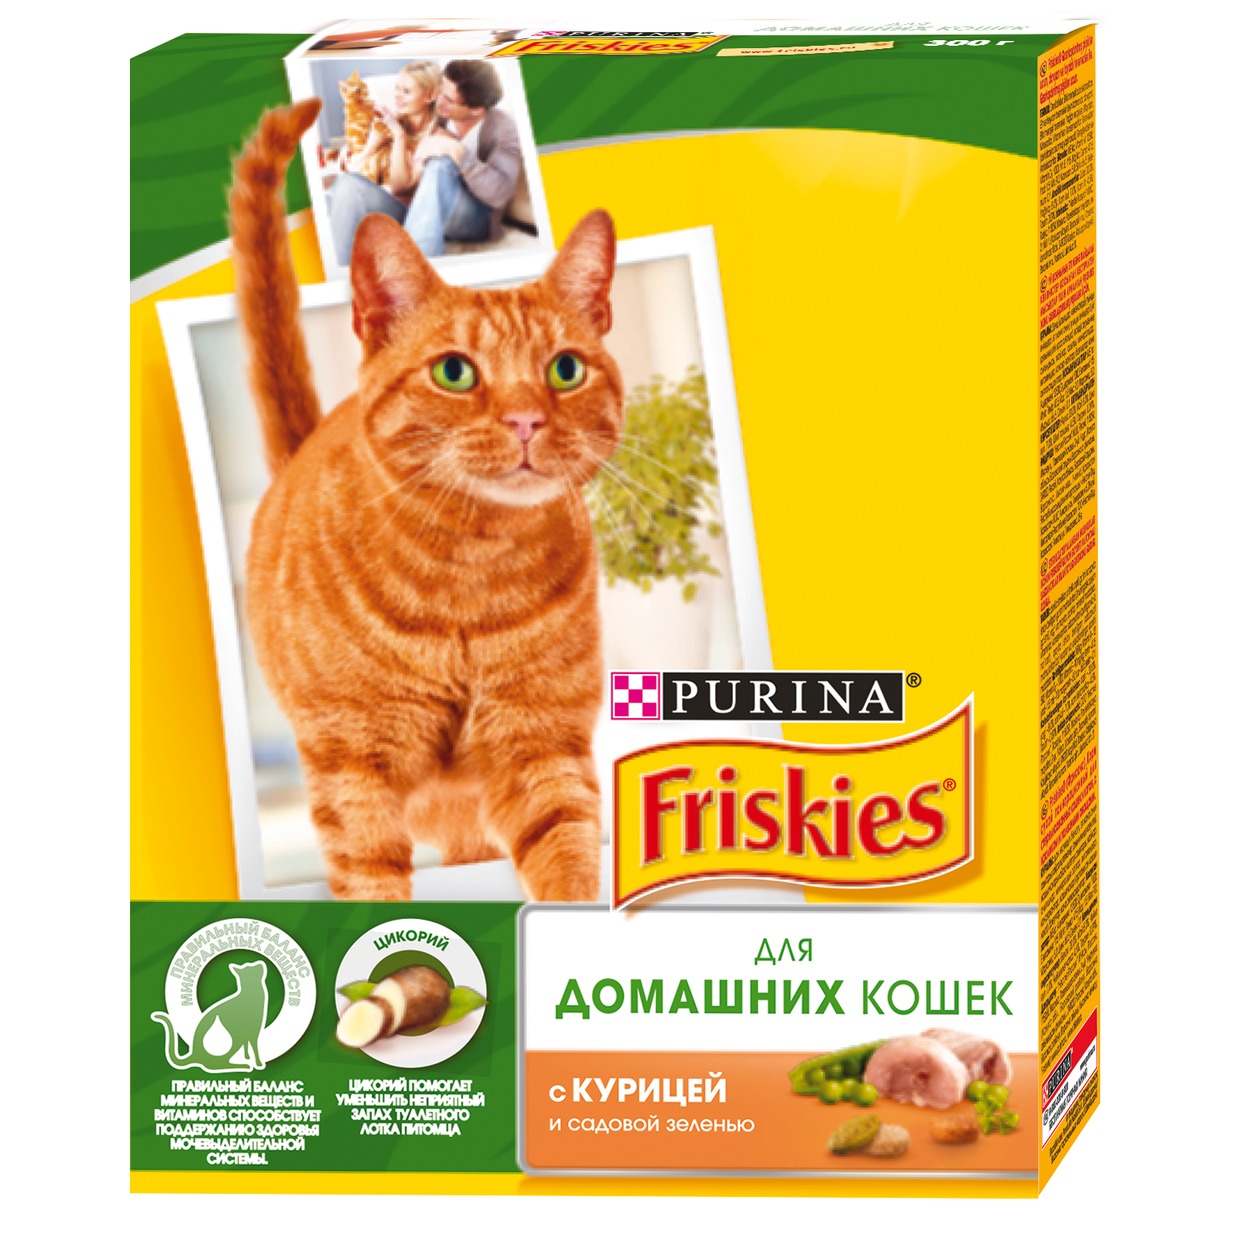 Корм Friskies С курицей и садовой зеленью для кошек 300г по акции в Пятерочке